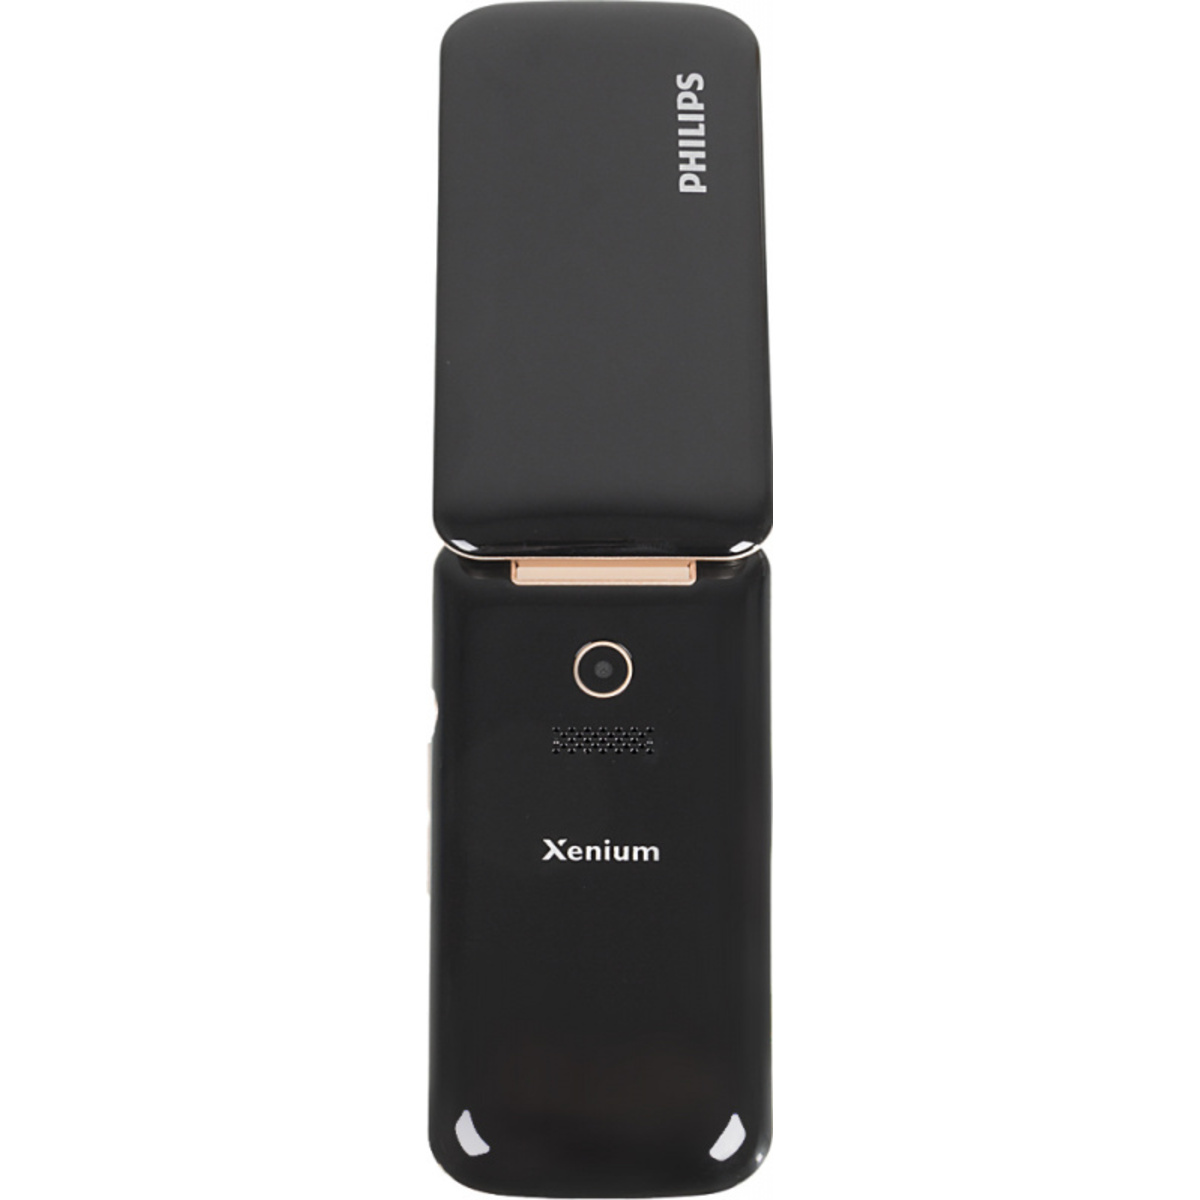 Мобильный телефон Philips Xenium E255, черный